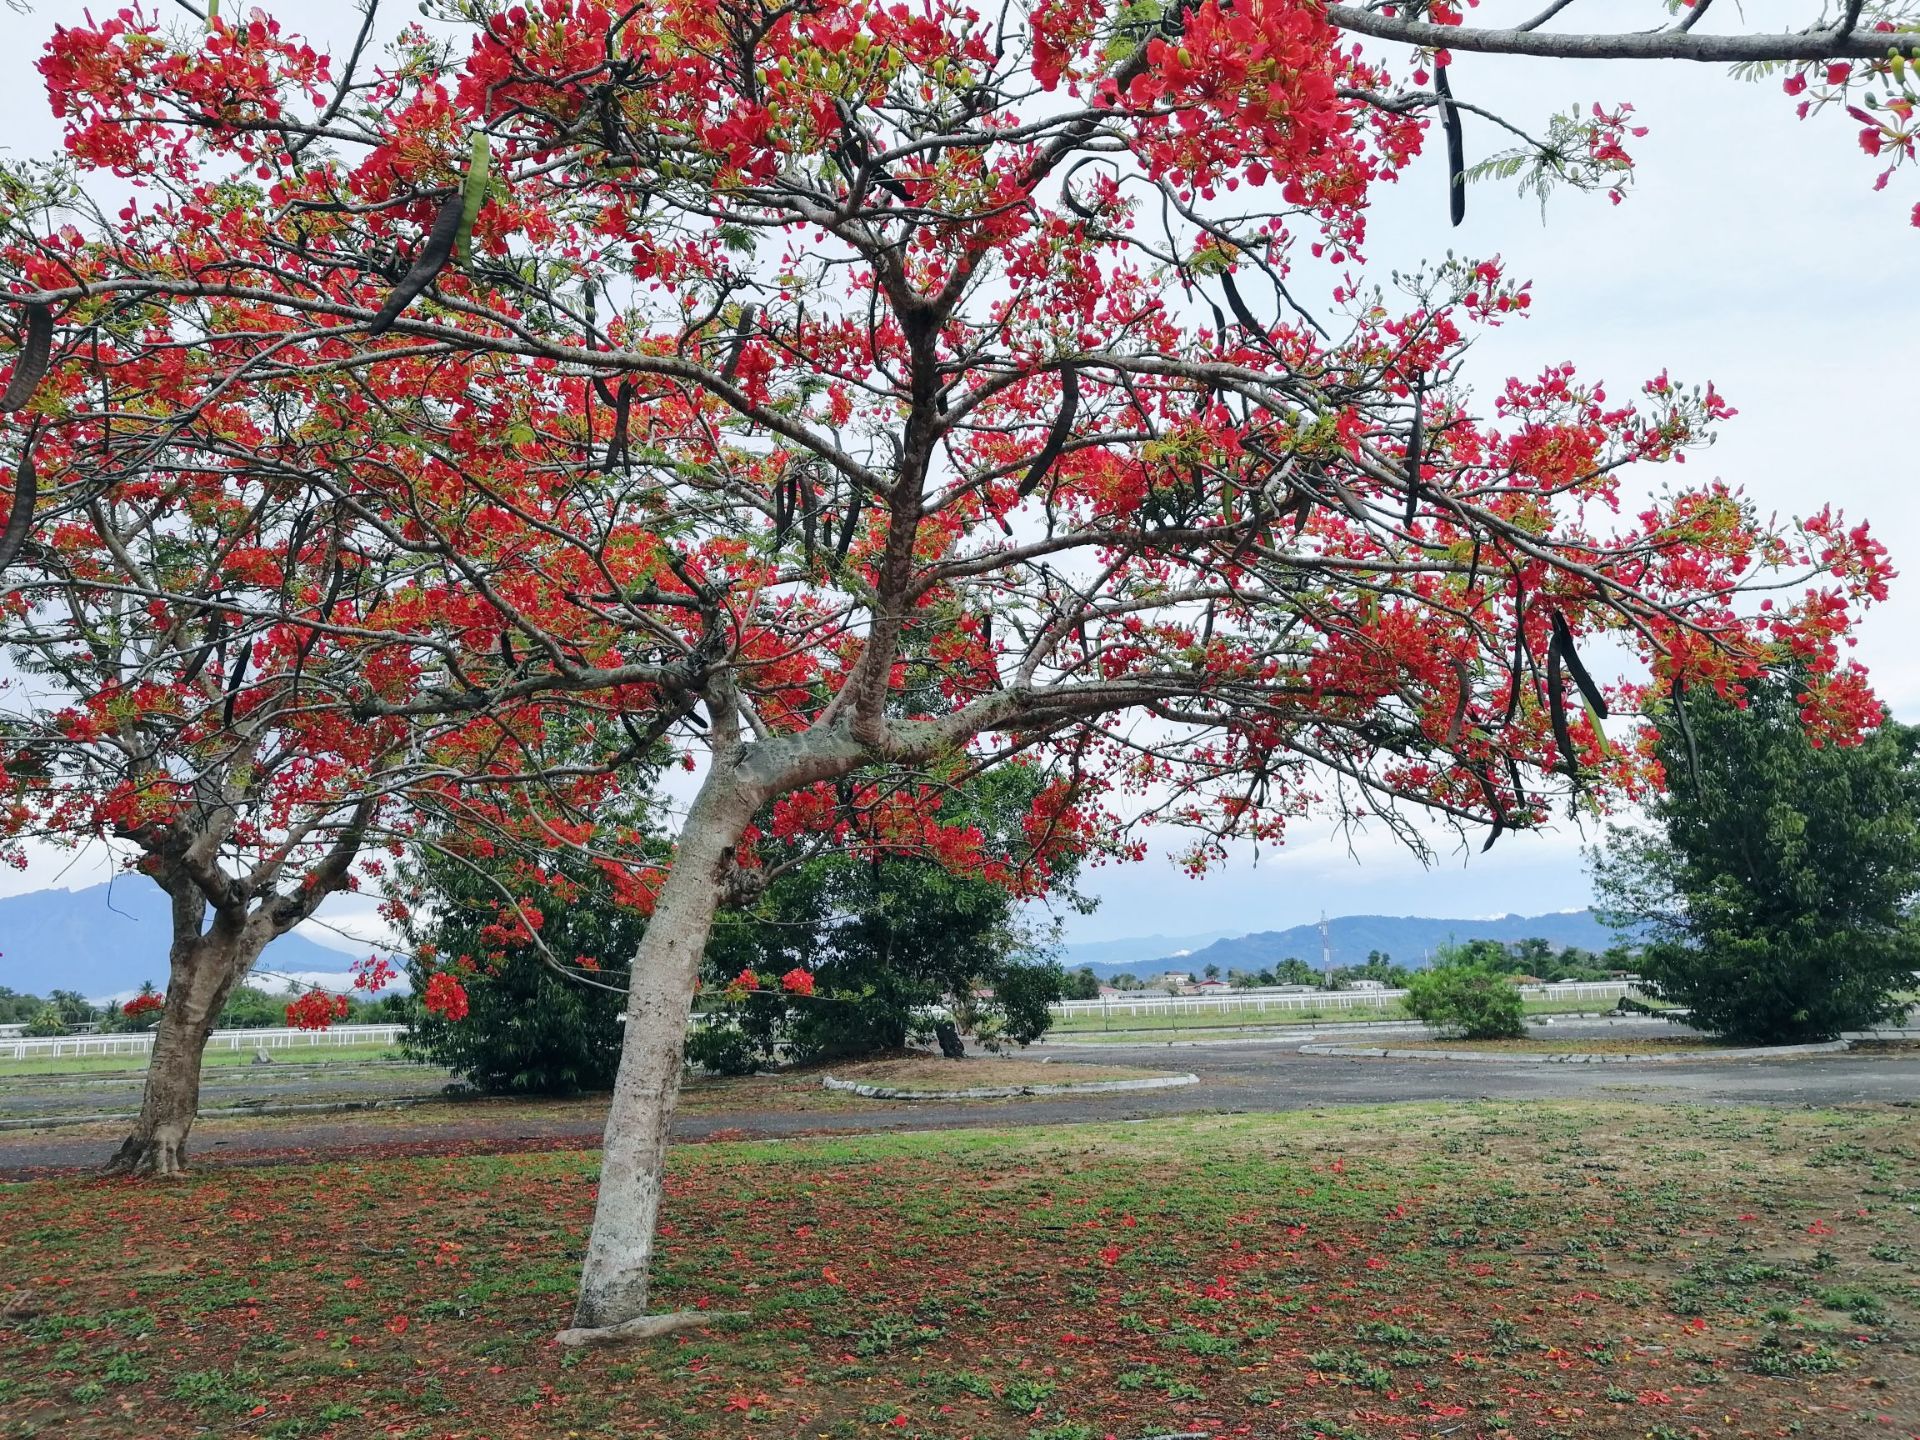 这里是东南亚！近赤道热带雨林海洋气候！到处都是彩色的！真的发现了有这样如此鲜艳的红！红的能改变你的三